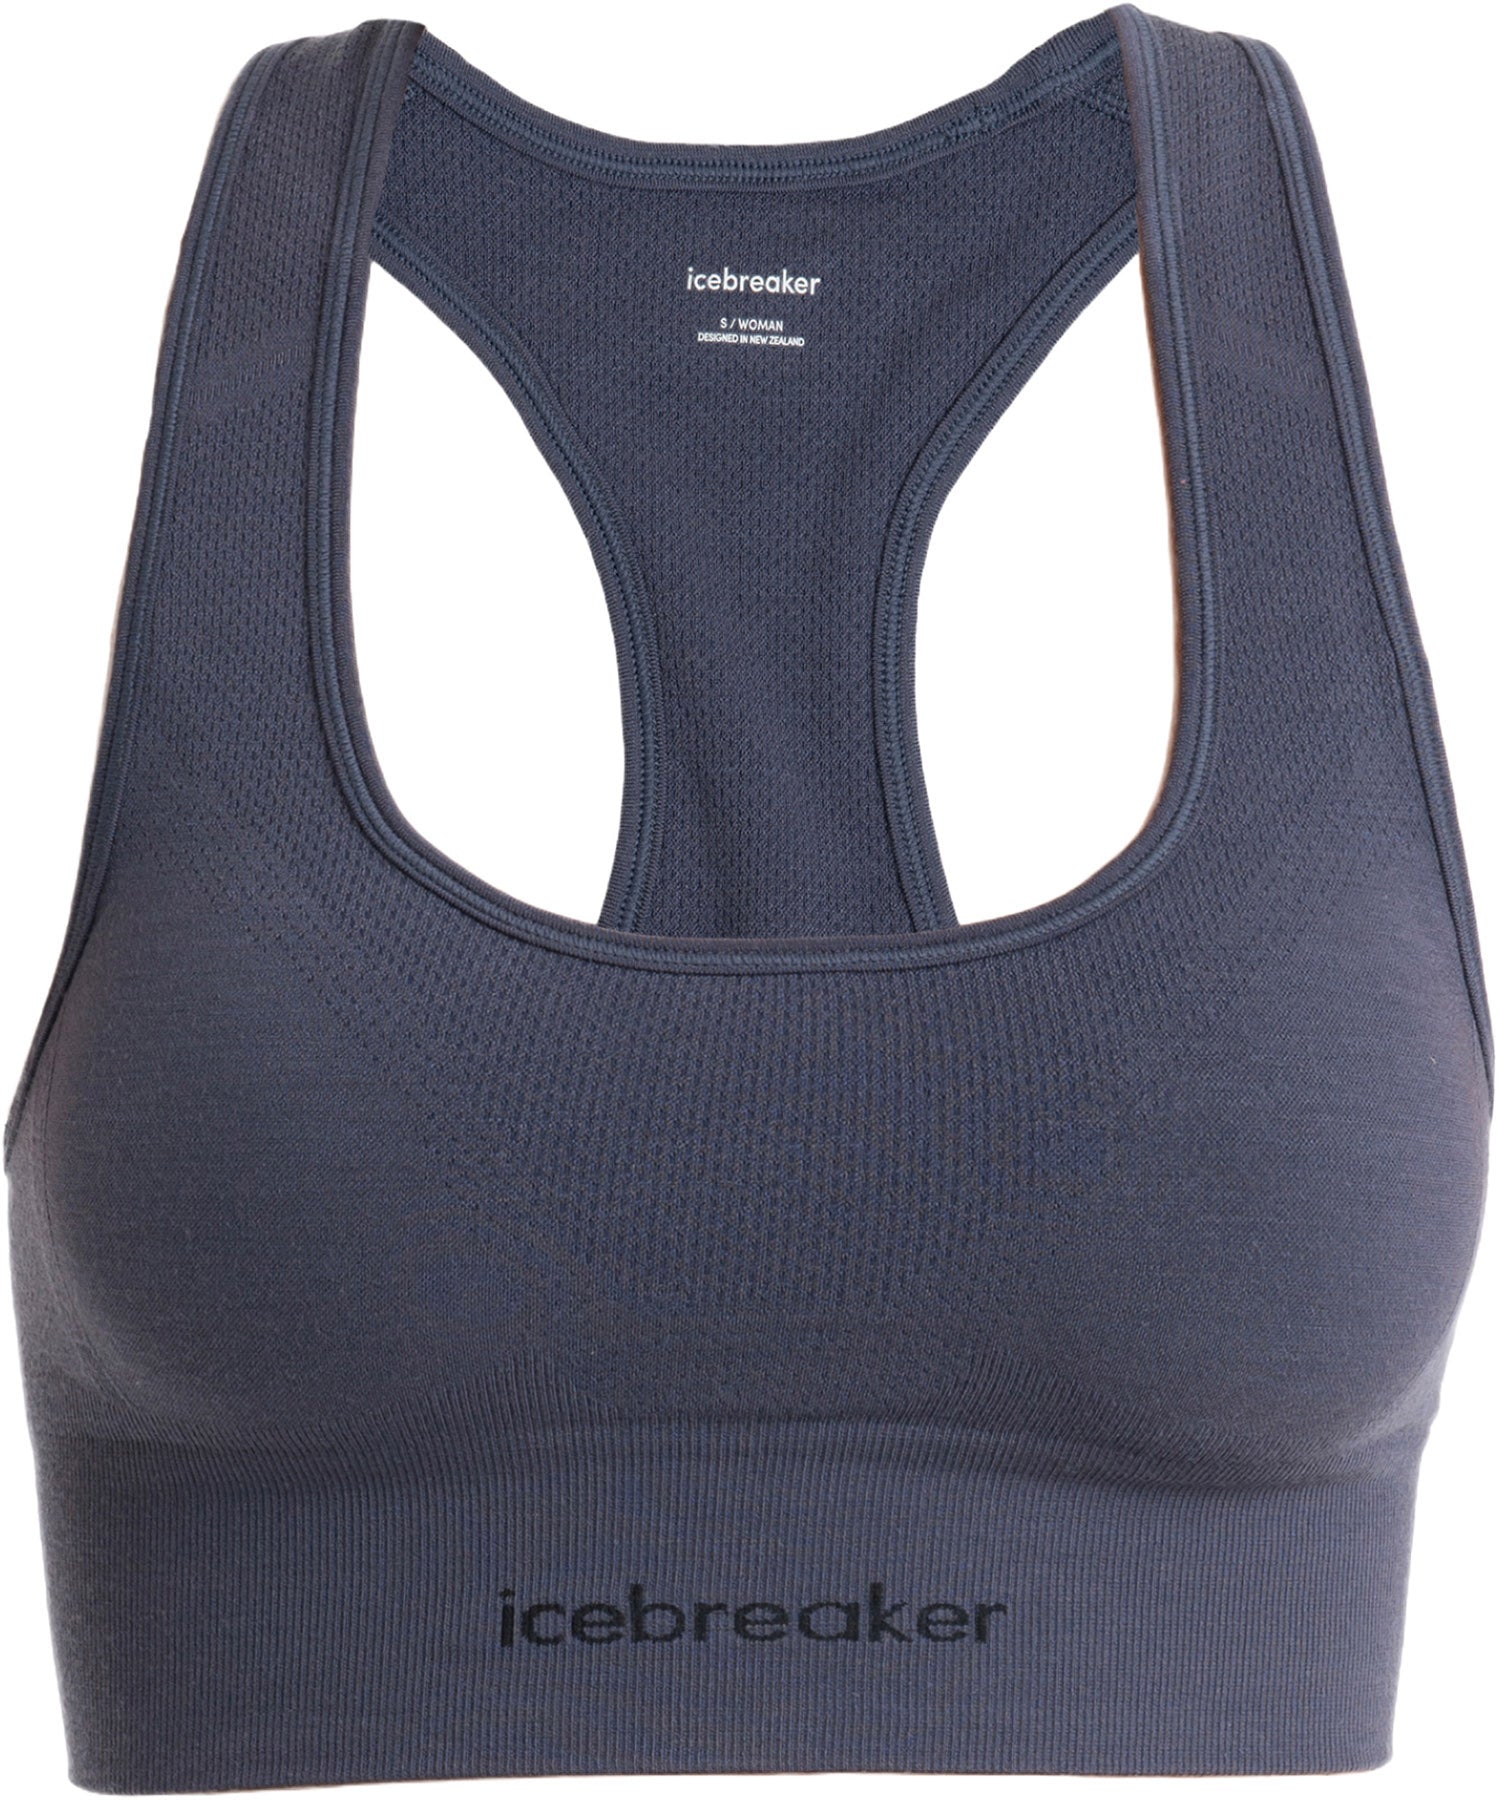 Icebreaker ZoneKnit Cropped Bra-Tank Top - Women's